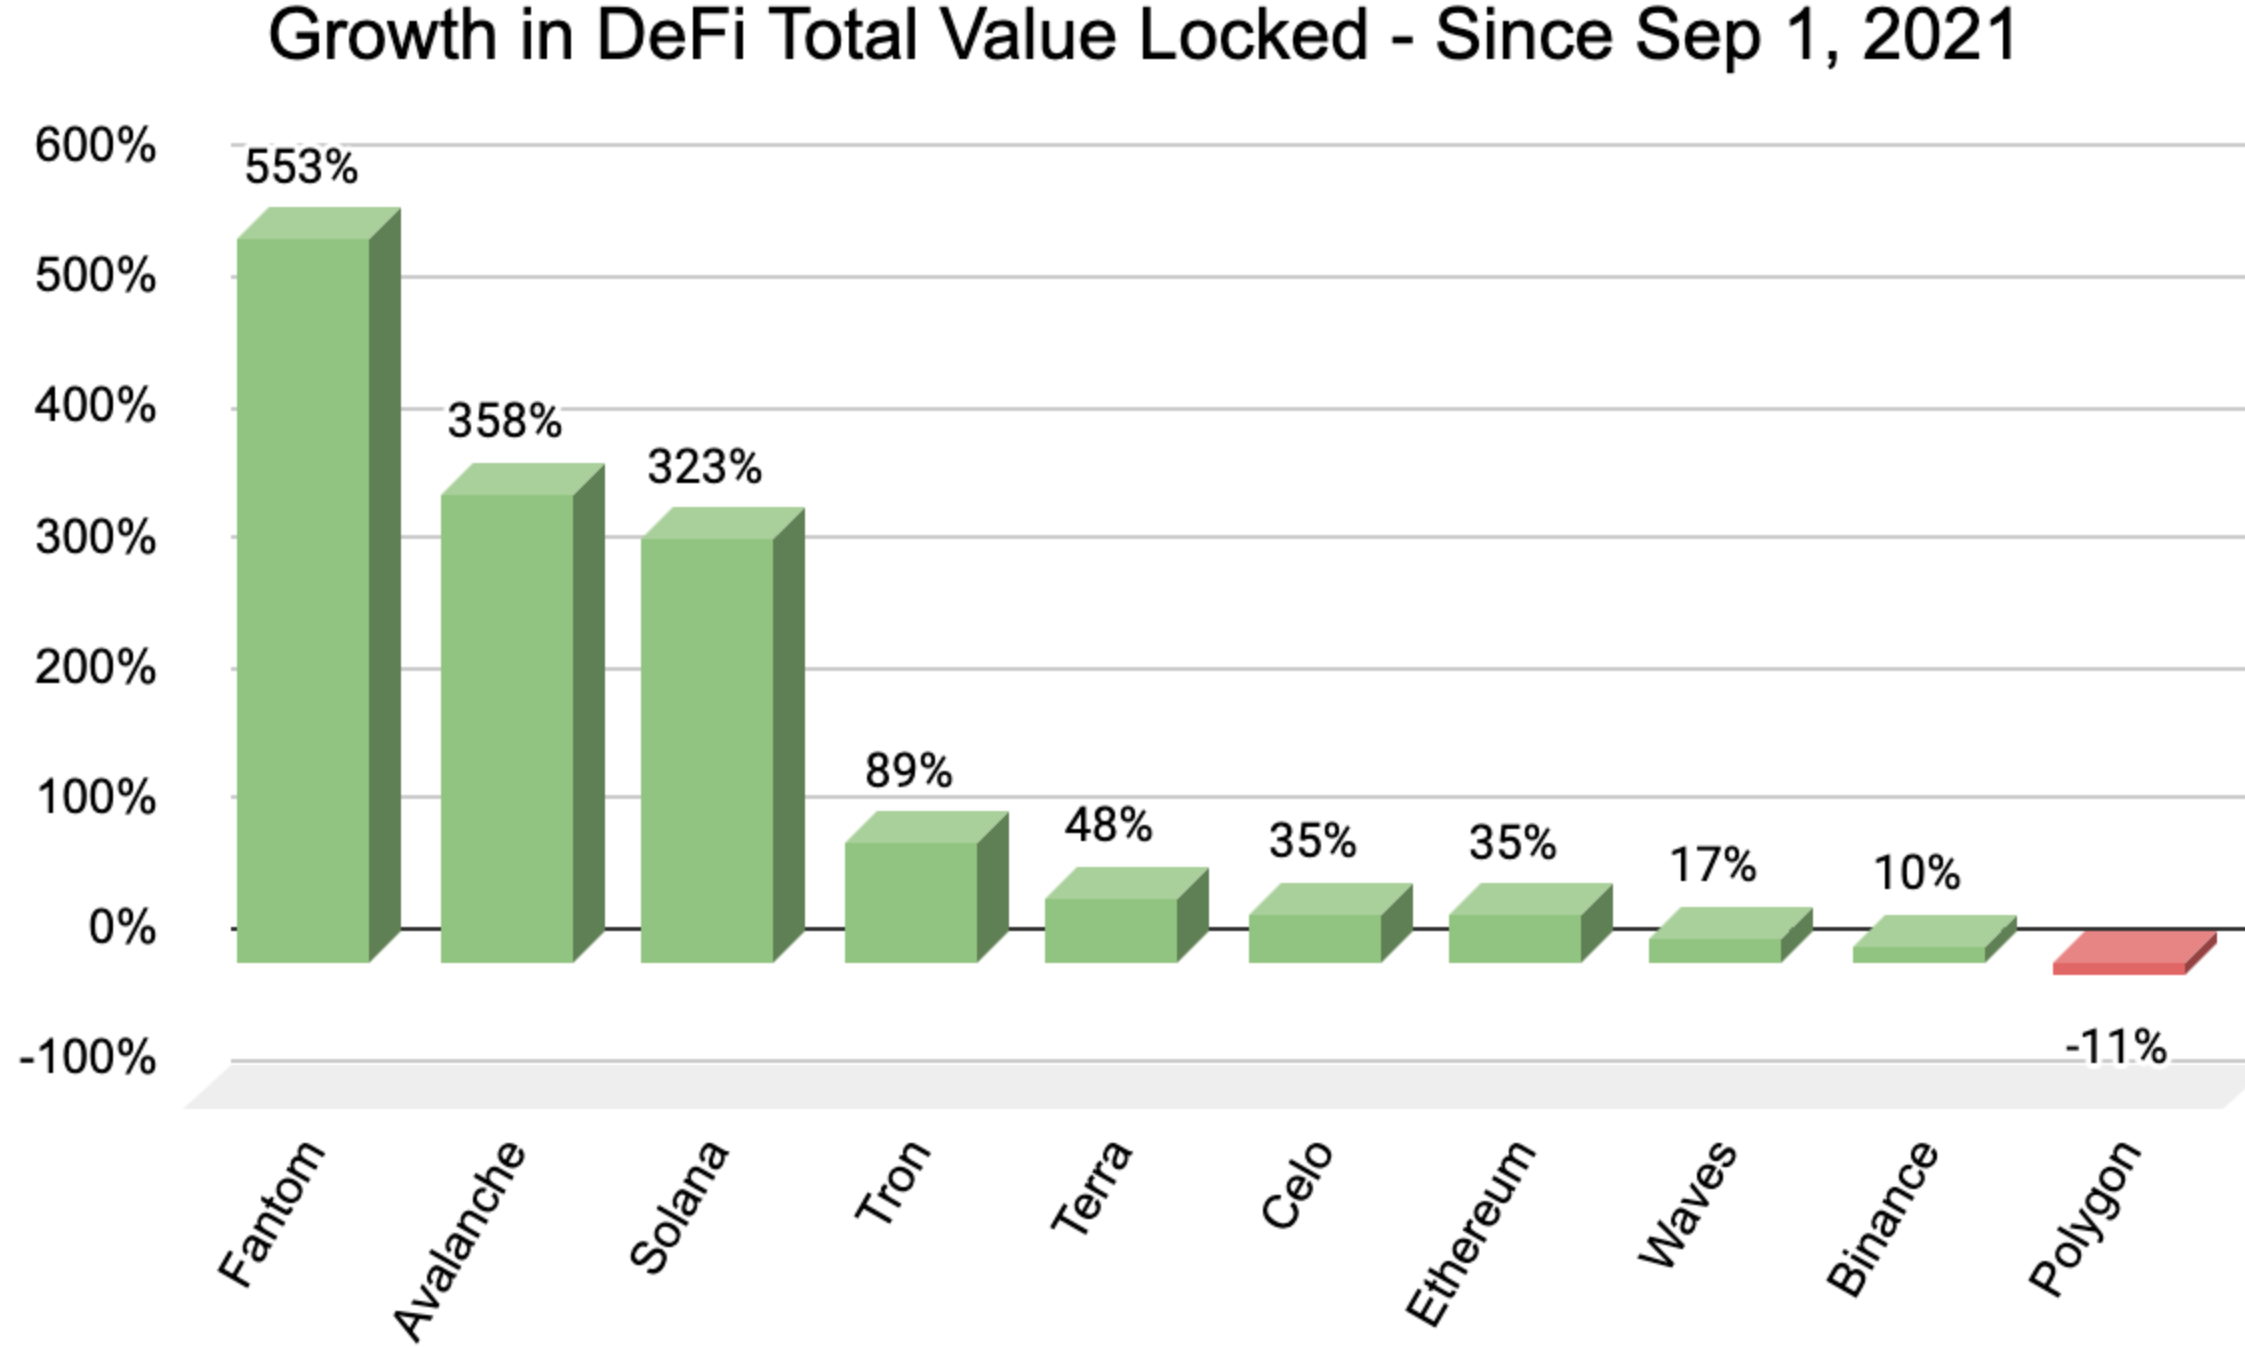 Con un crecimiento del 553%, Fantom es la cadena de bloques principal de más rápido crecimiento en DeFi desde septiembre